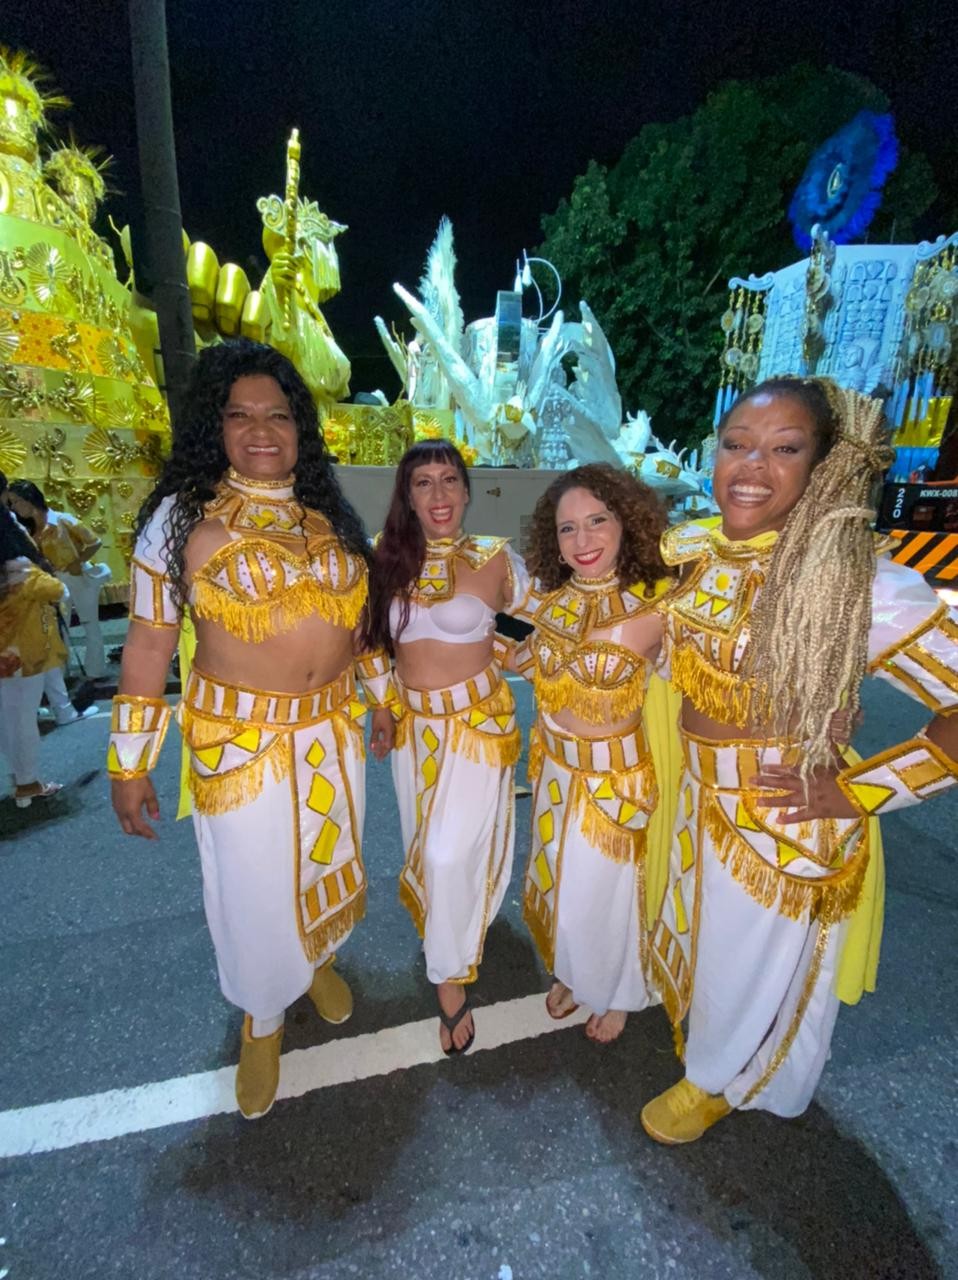 Ana Carla Laidley no desfile do Carnaval 2022 no Rio de Janeiro (Foto: Arquivo Pessoal)